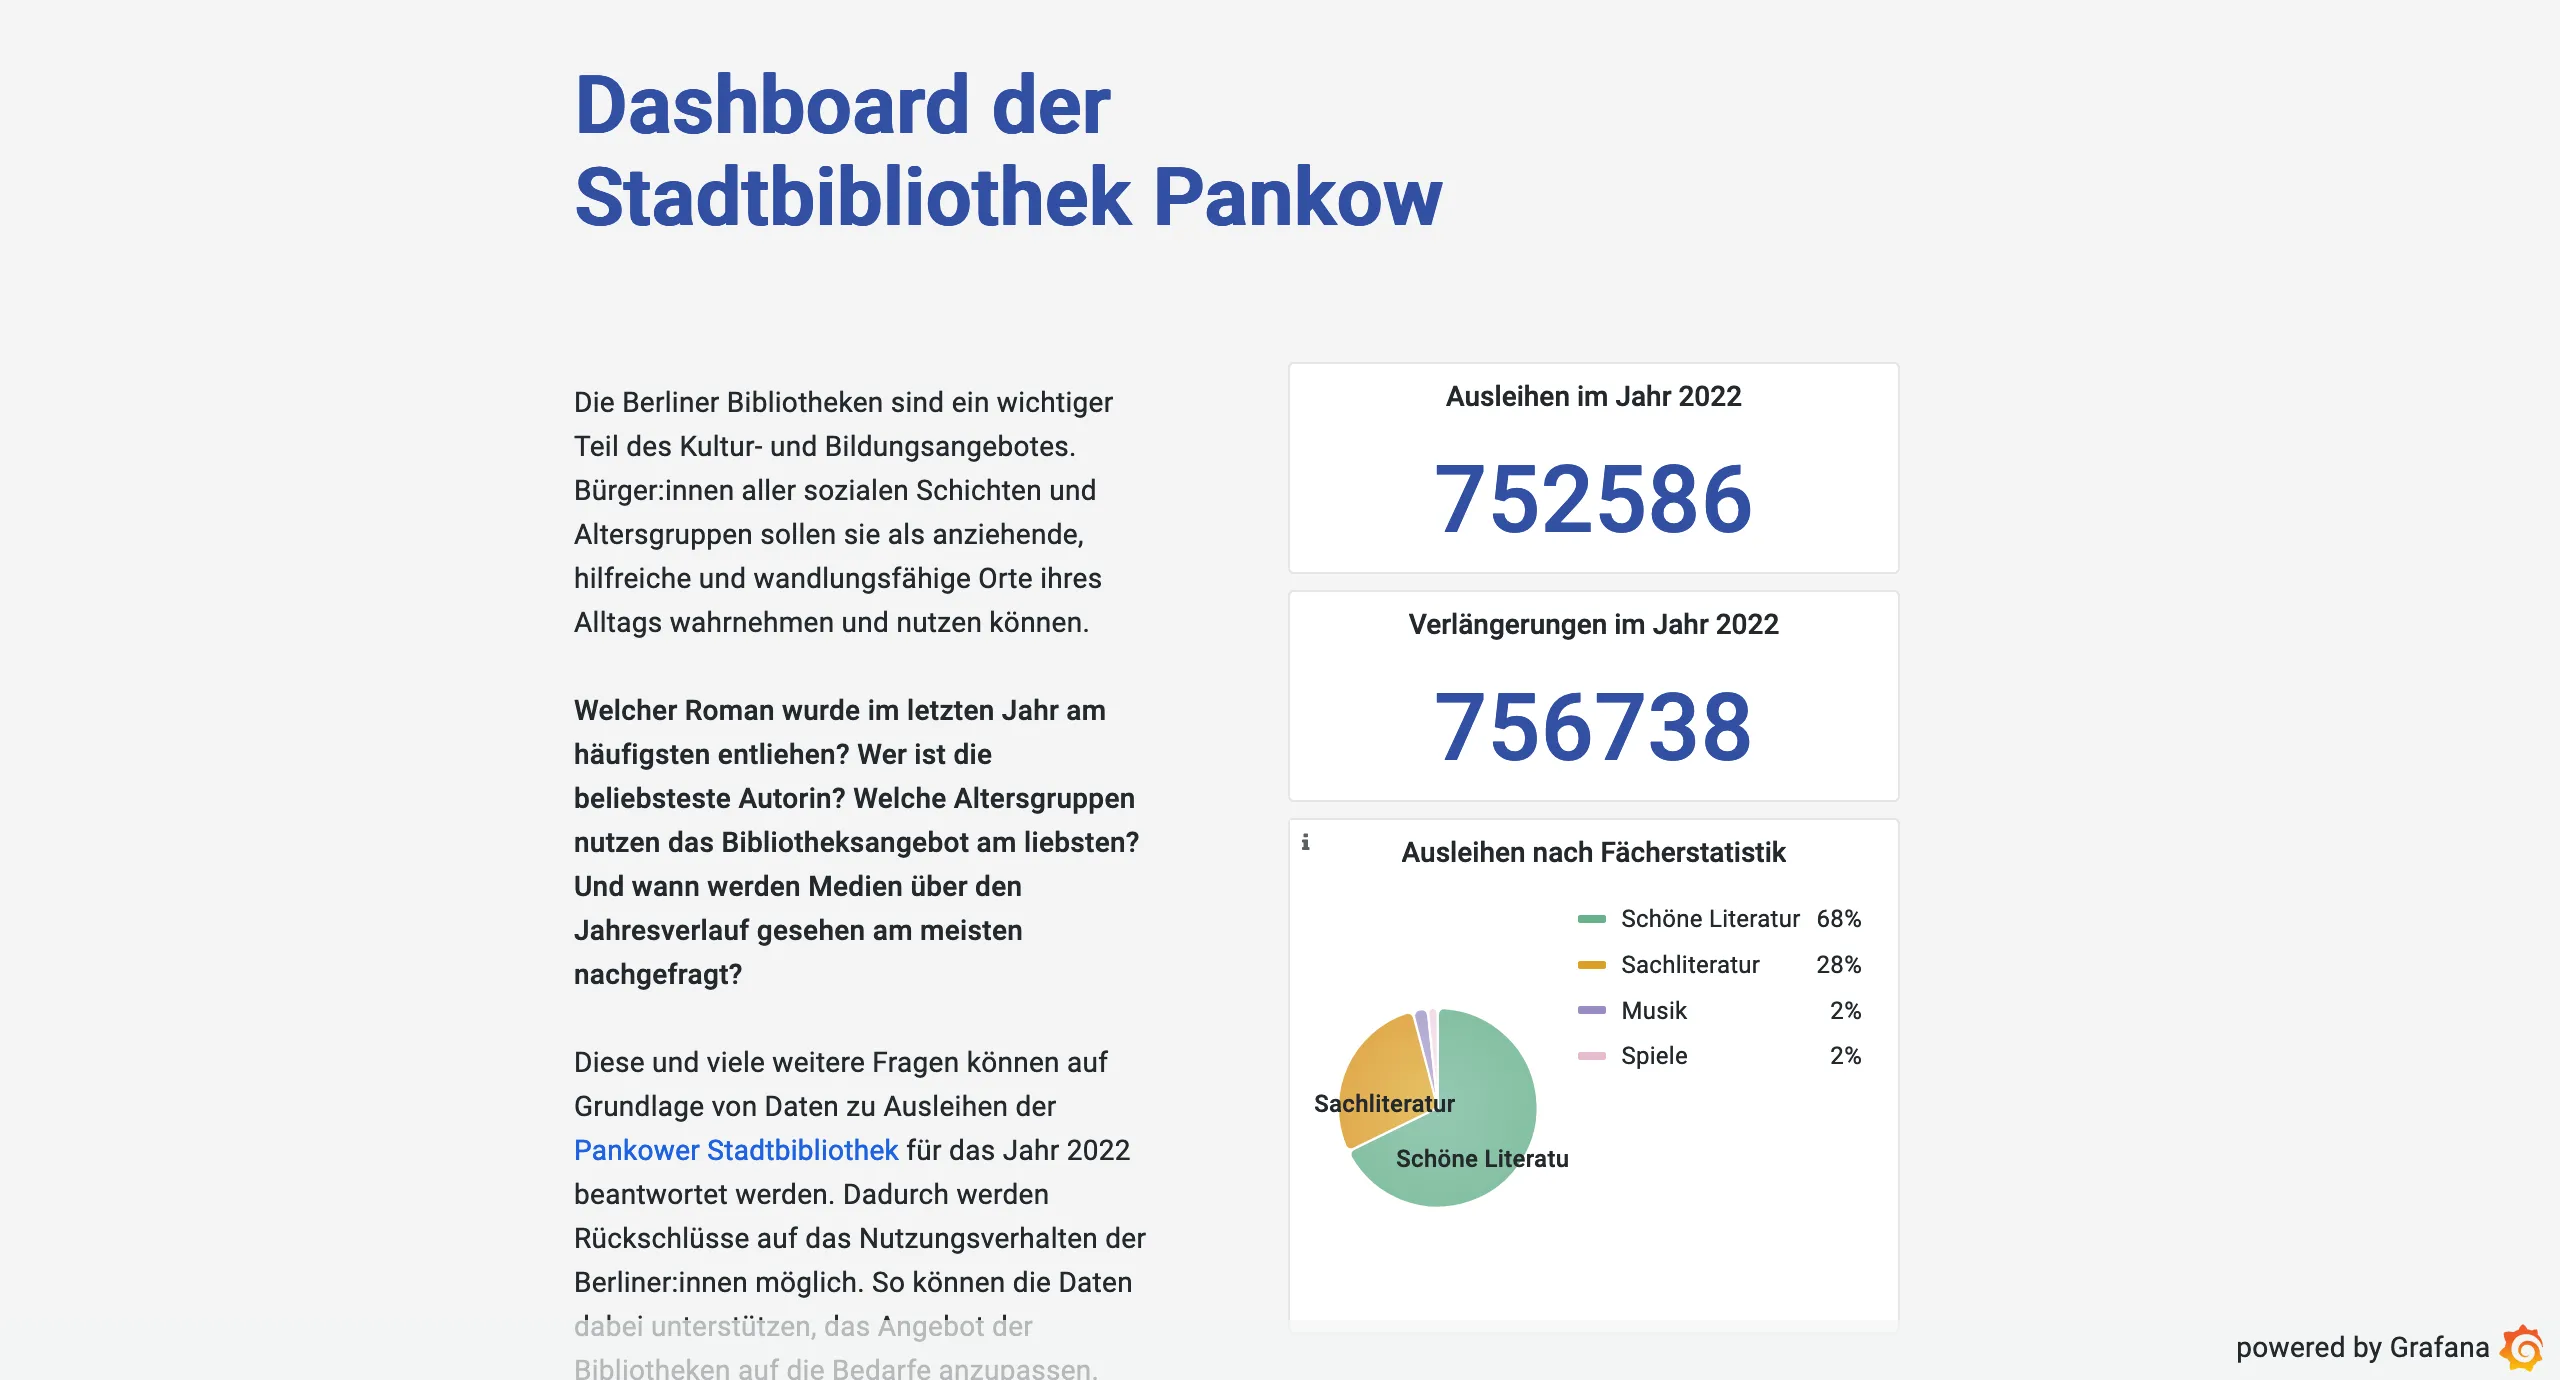 Das Dashboard zeigt verschiedene Analysen, zum Beispiel die Anzahl der Gesamtausleihen oder die Fächerstatistik